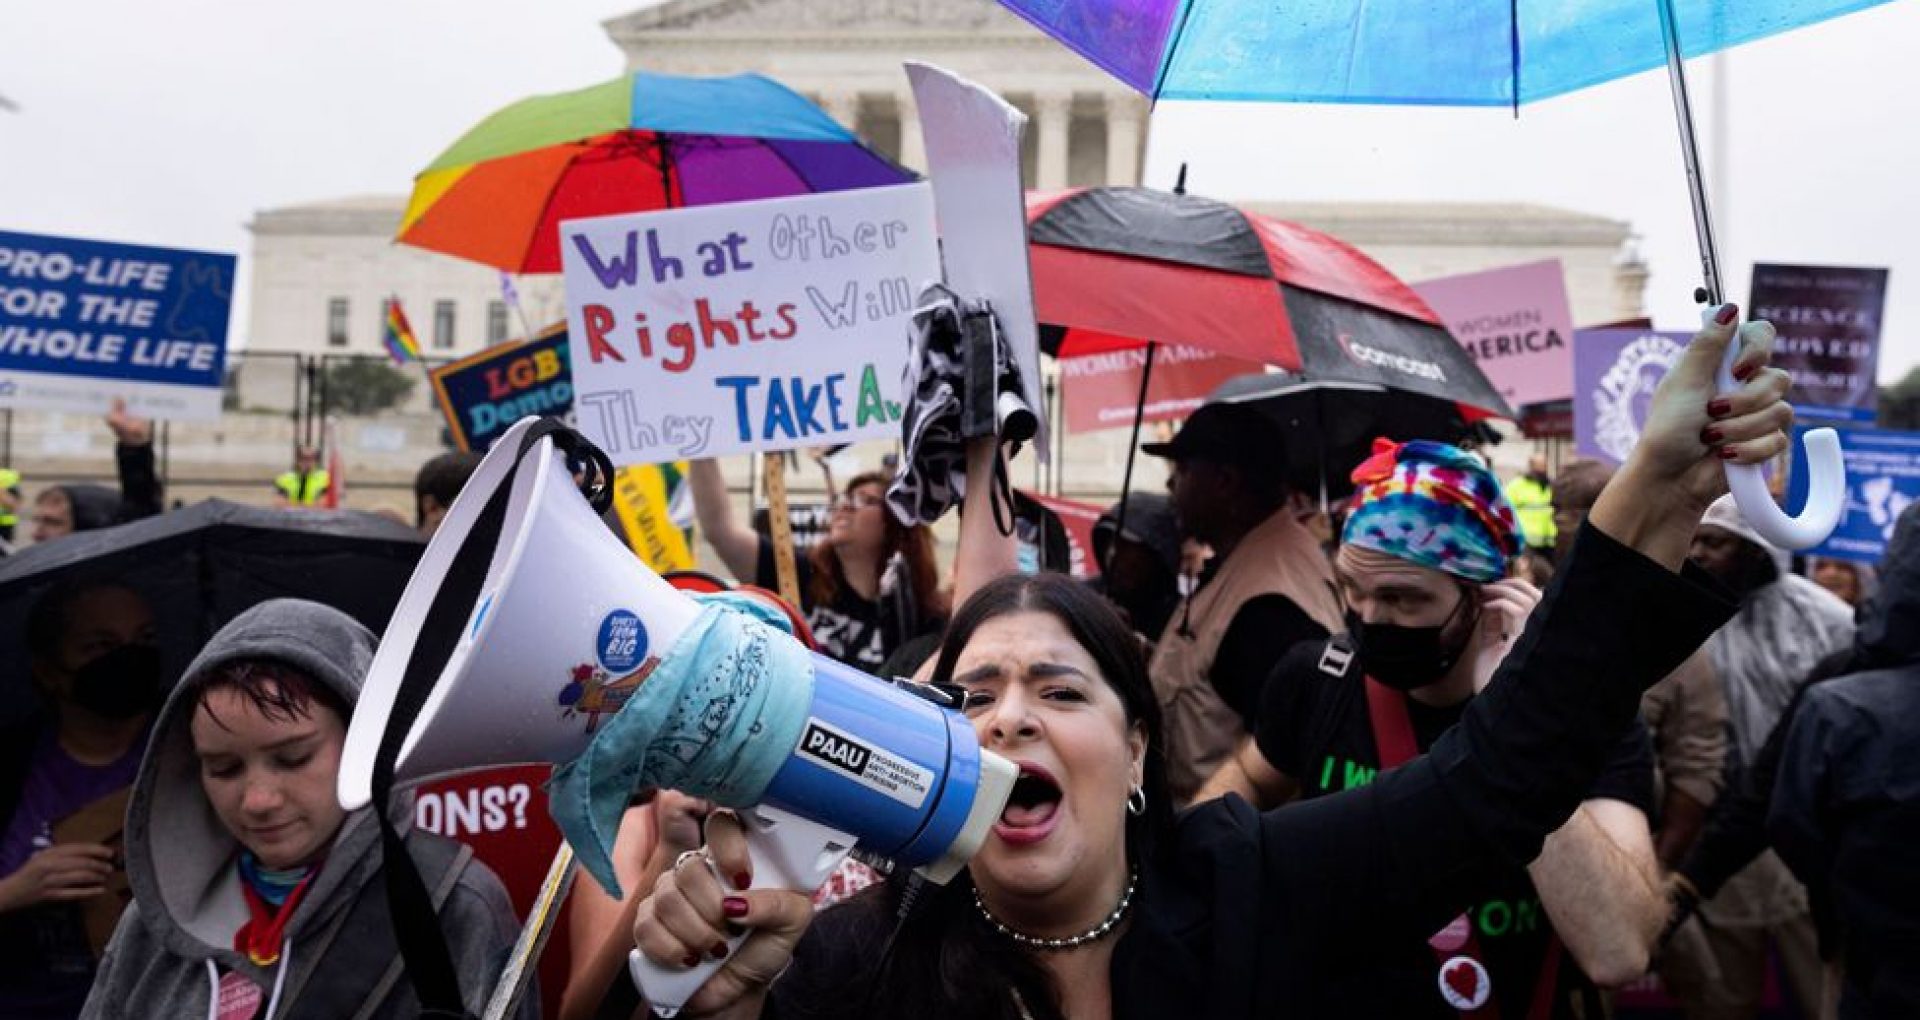 Curtea Supremă a anulat dreptul constituțional la avort în SUA. S-au organizat zeci de proteste împotriva deciziei